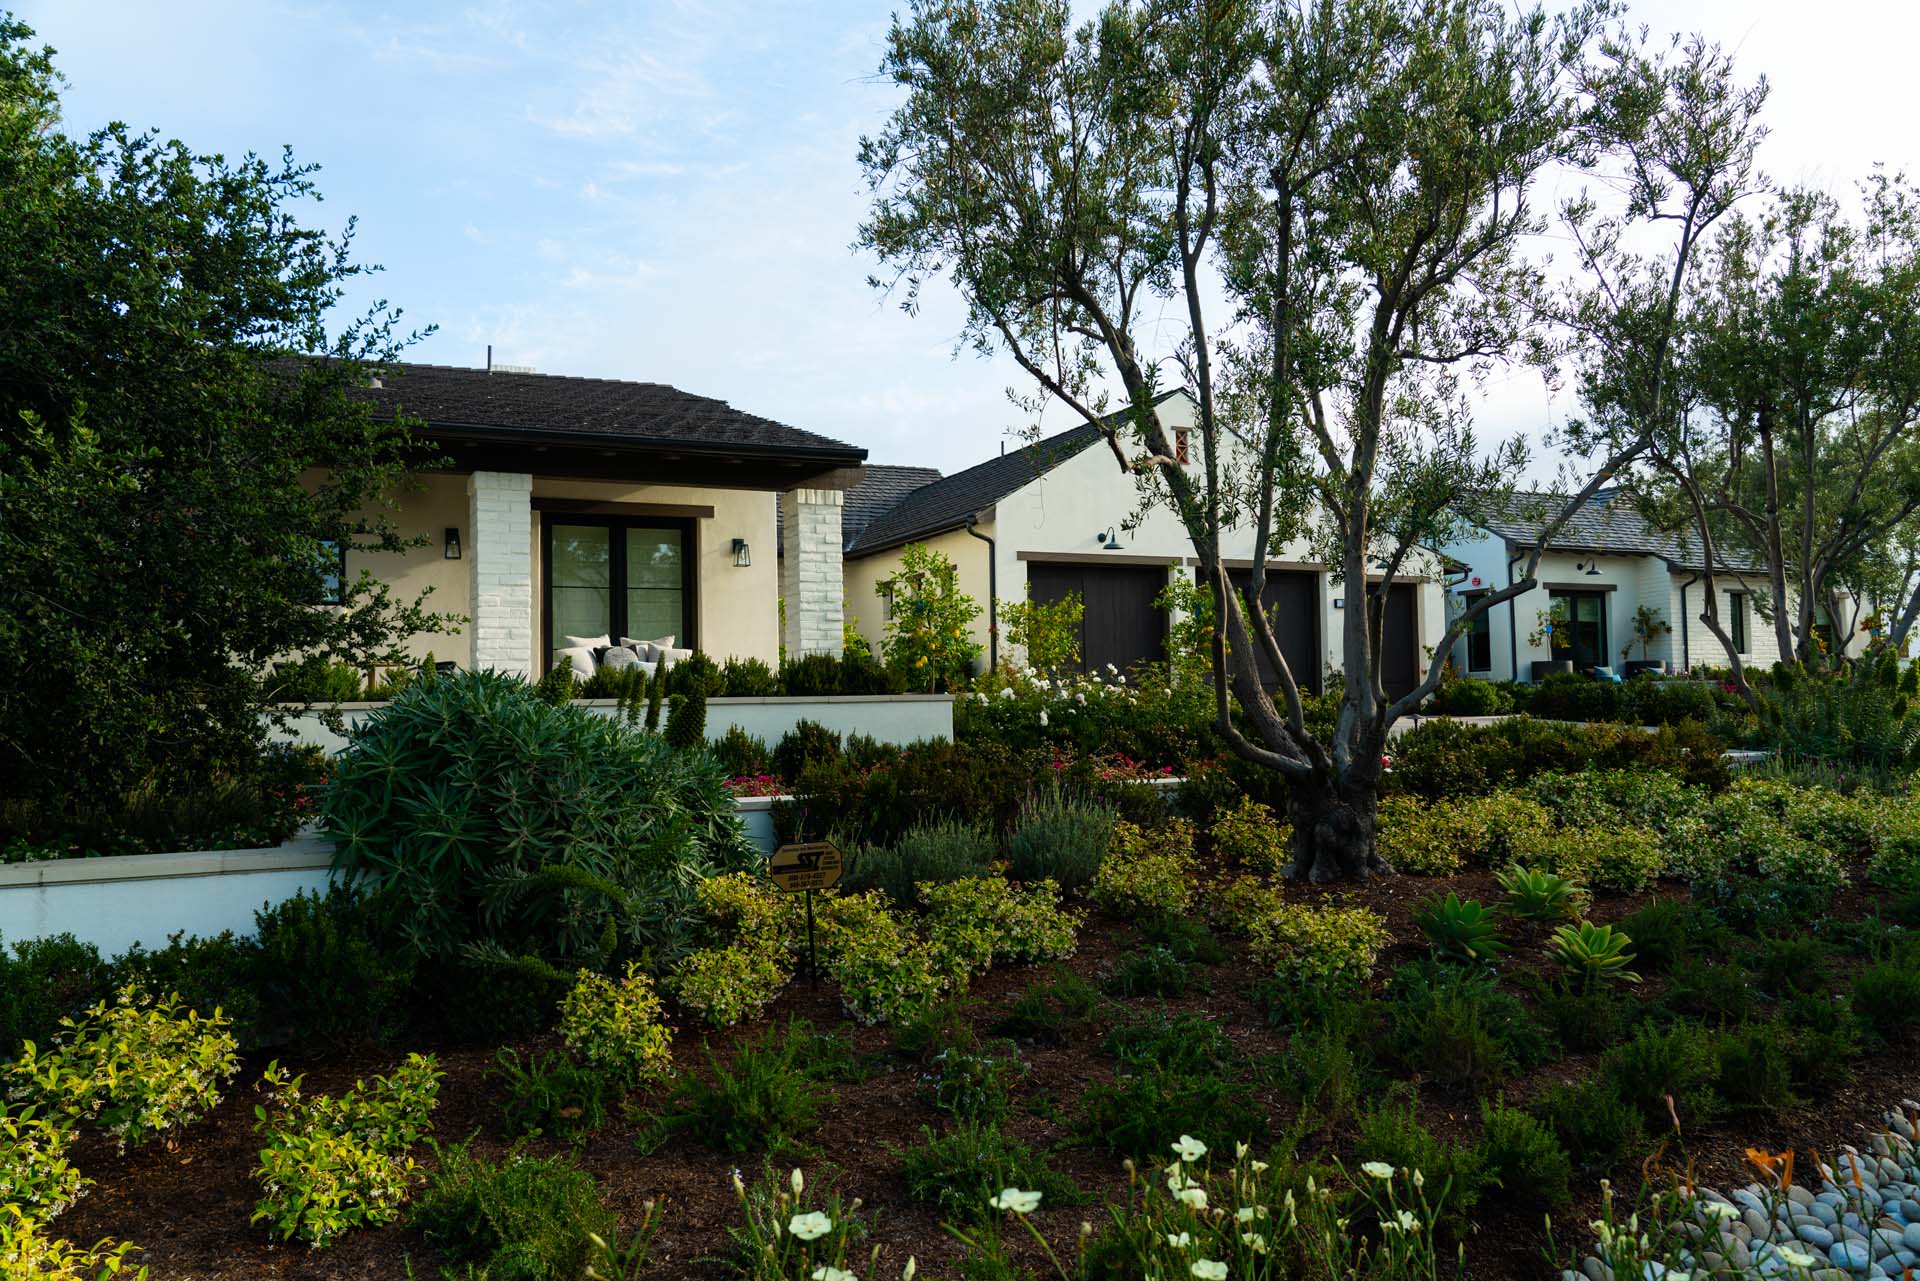 Catalina Vista Project - Landscape Architecture - The Burns Company